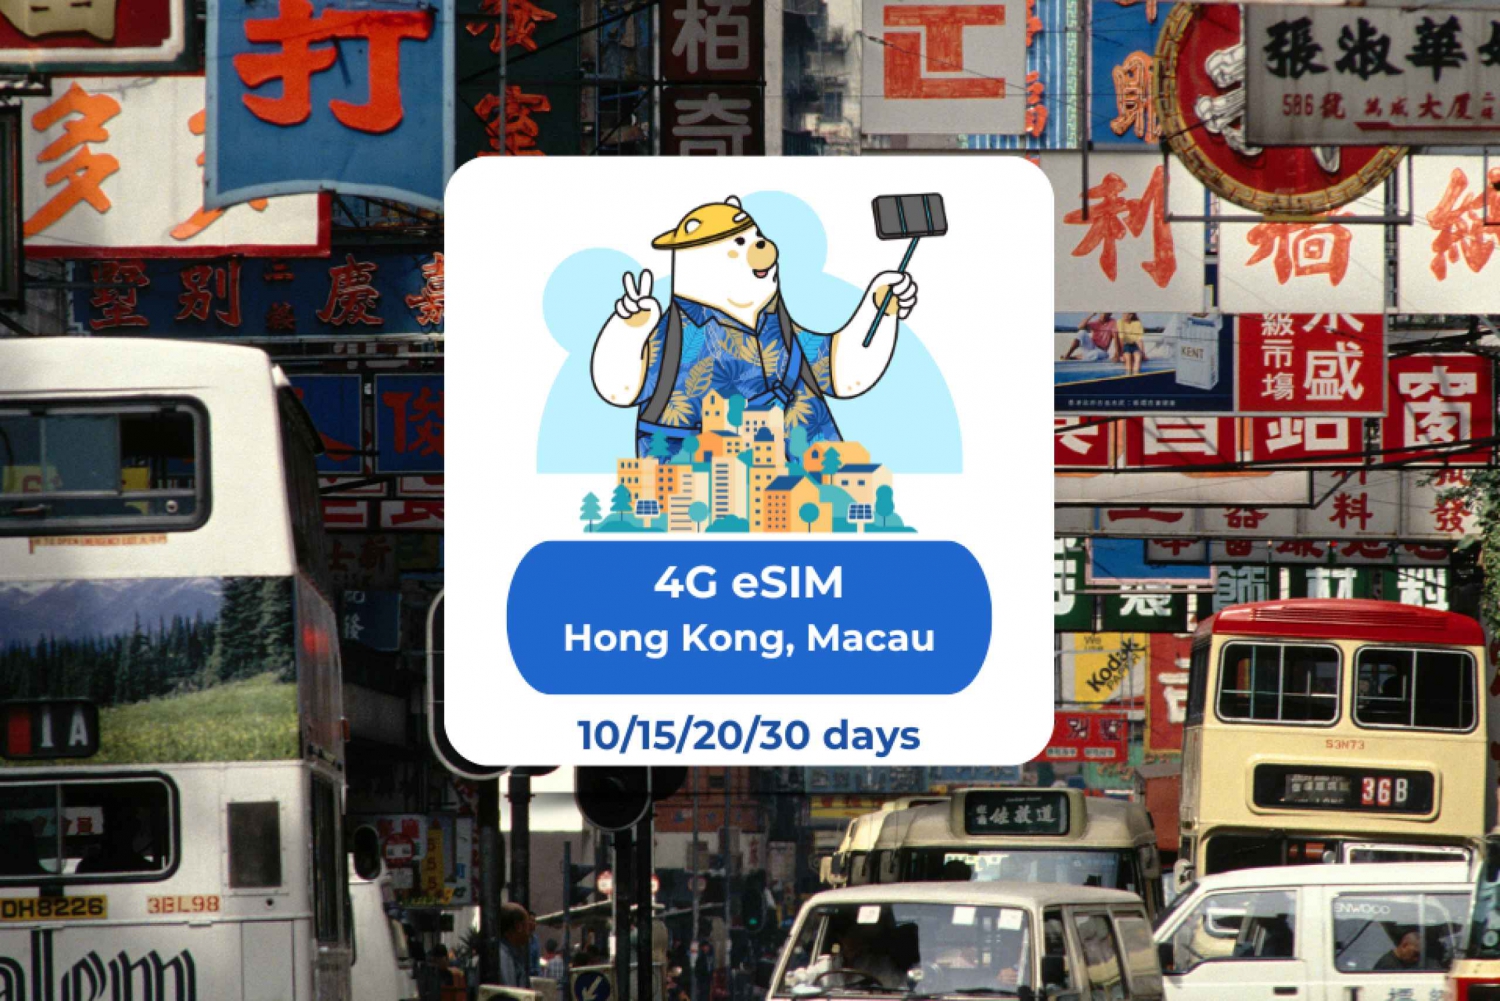 Hong Kong - Macao: Paquetes de datos Esim para 10/15/20/30 días